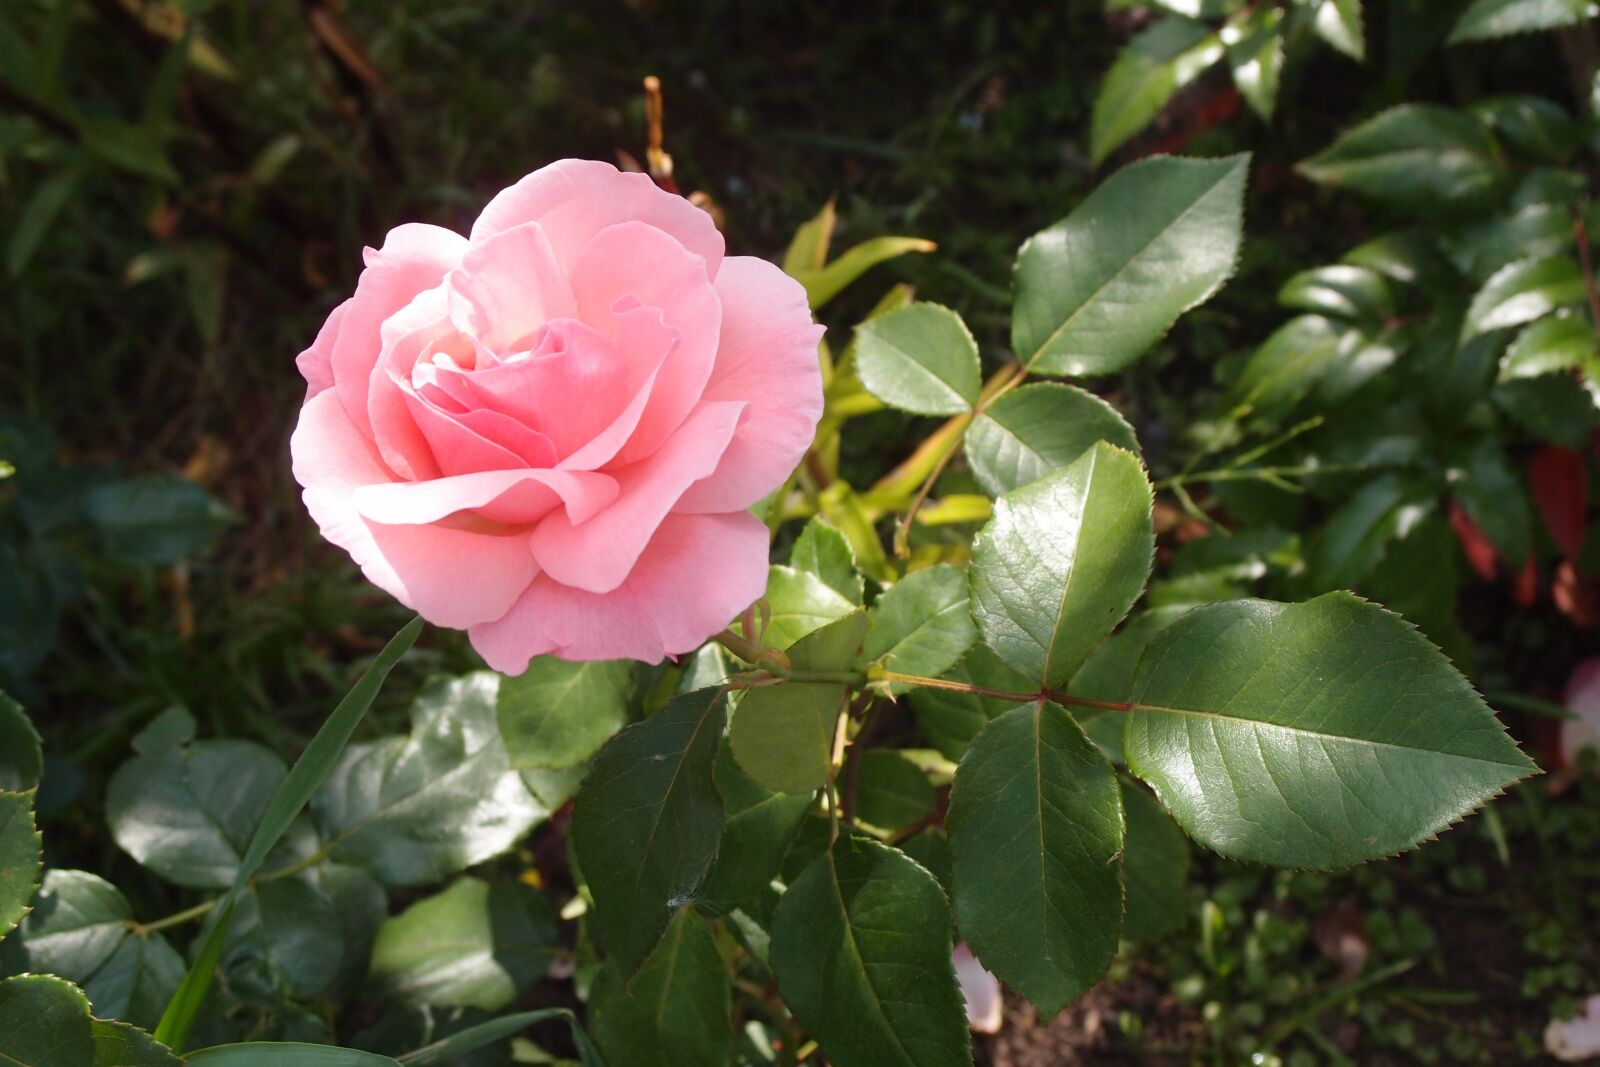 Olympus XZ-1 sample photo. Rose, flower, roses photography